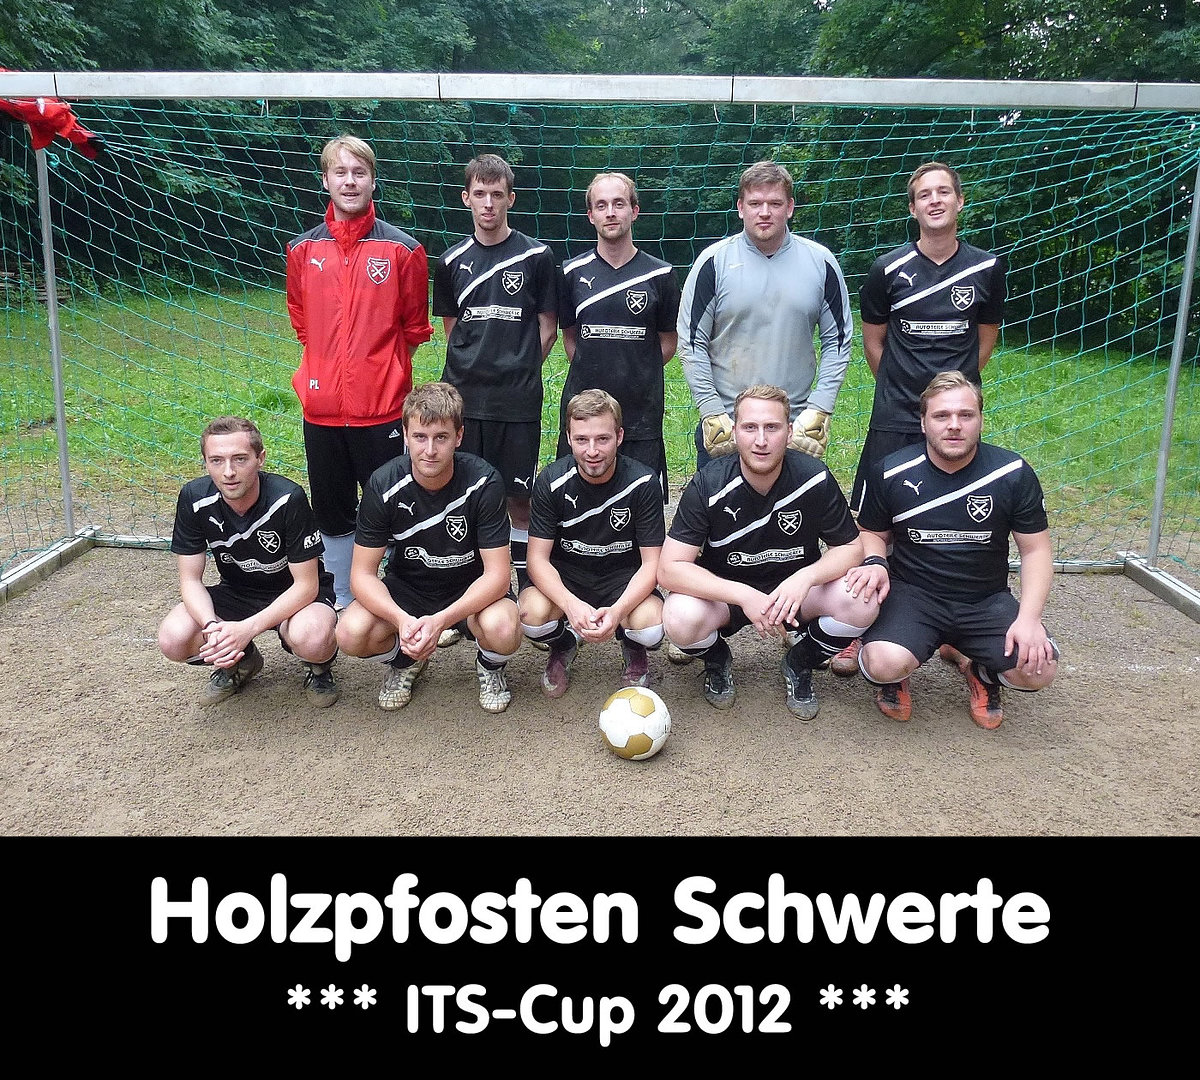 Its cup 2012   teamfotos   holzpfosten schwerte retina